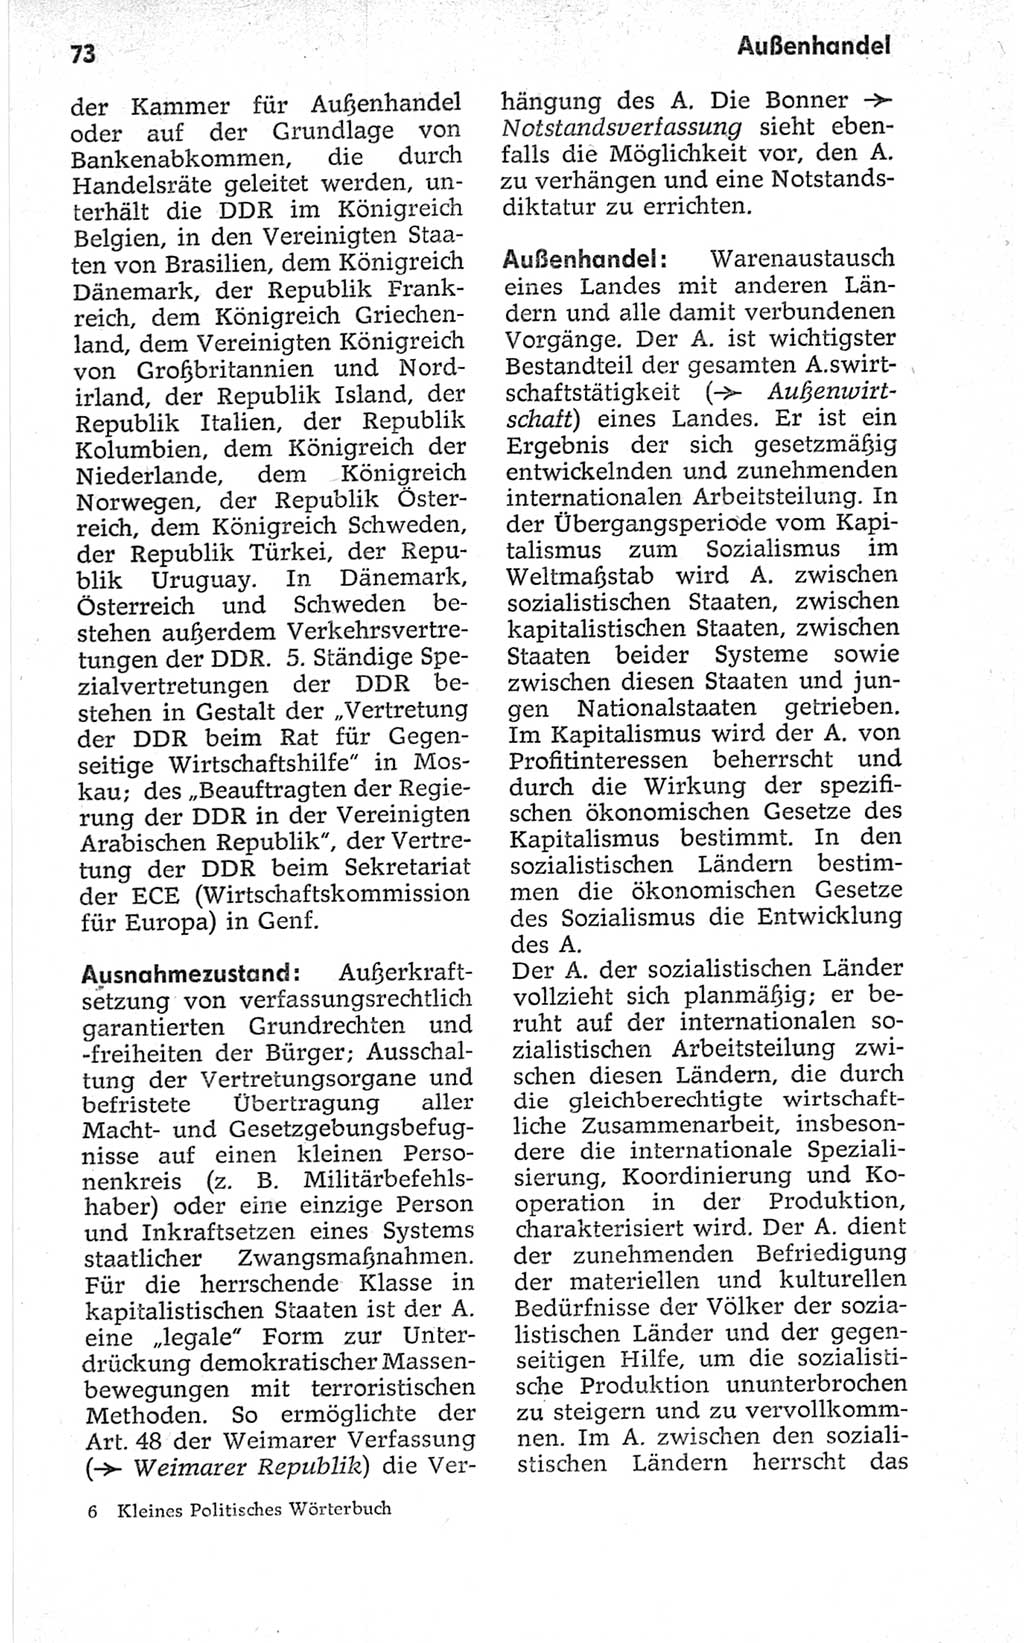 Kleines politisches Wörterbuch [Deutsche Demokratische Republik (DDR)] 1967, Seite 73 (Kl. pol. Wb. DDR 1967, S. 73)